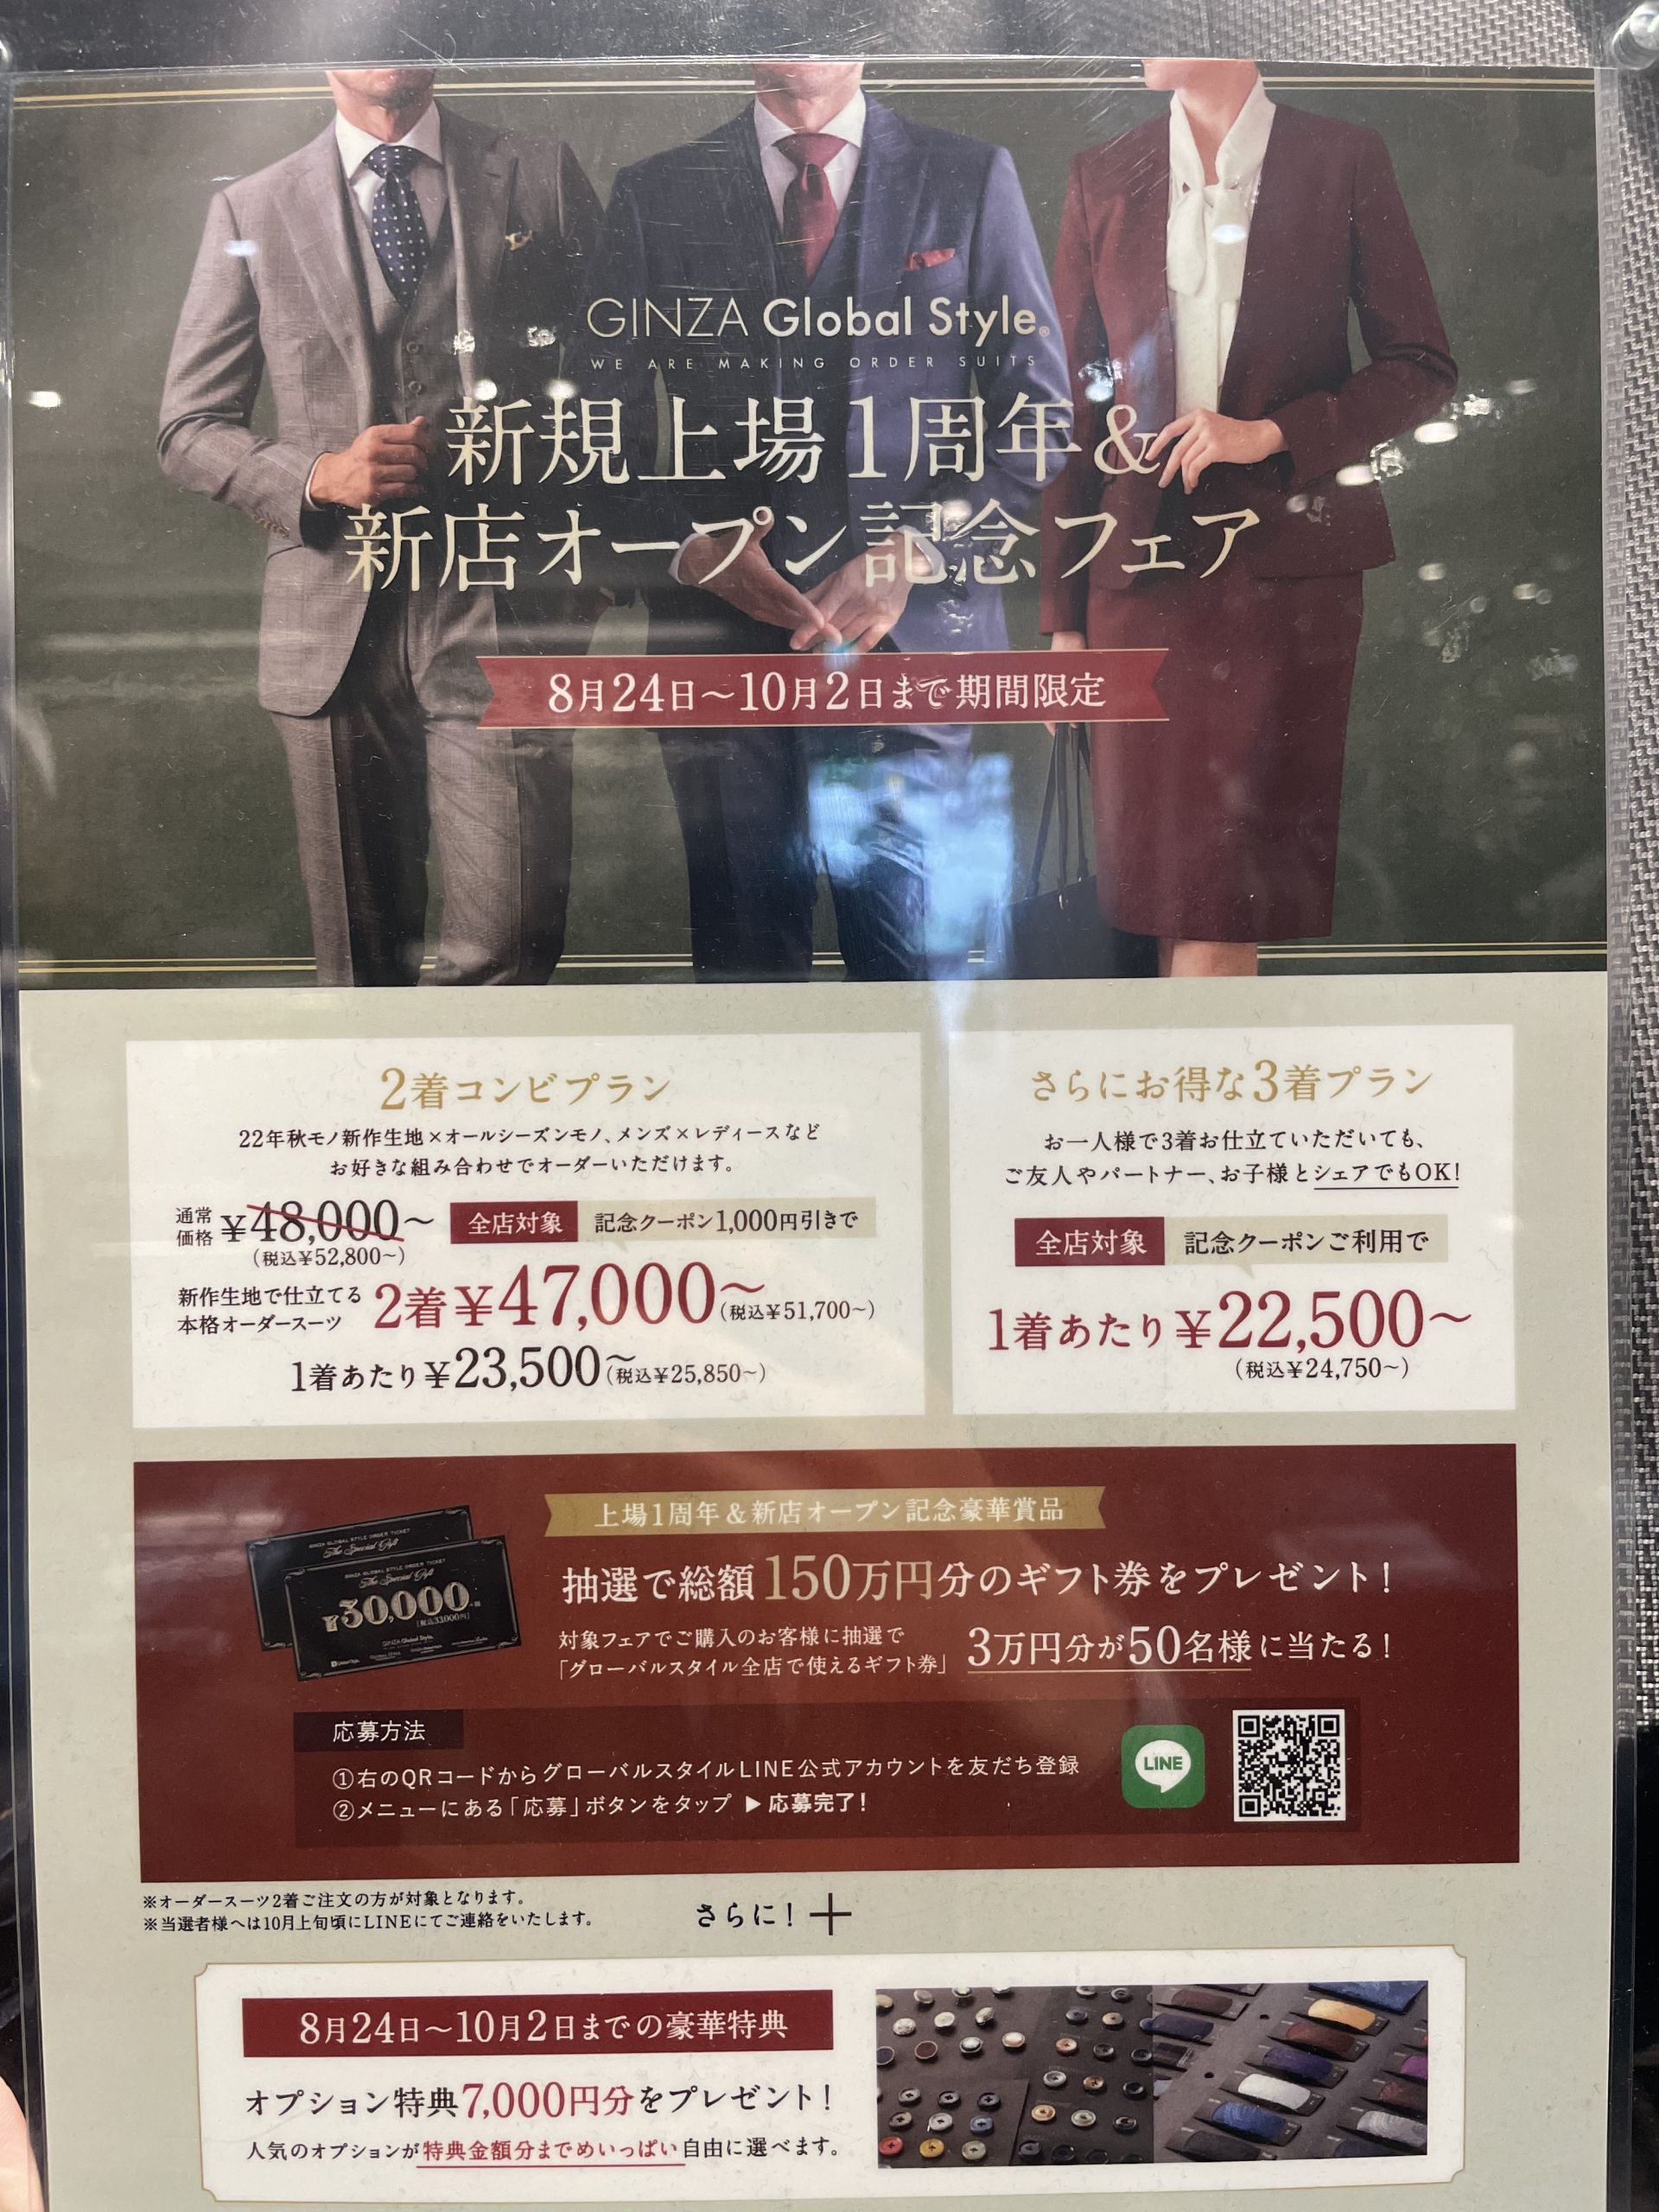 オーダースーツ GINZA Global Style 商品券 2万7000円分券チケット